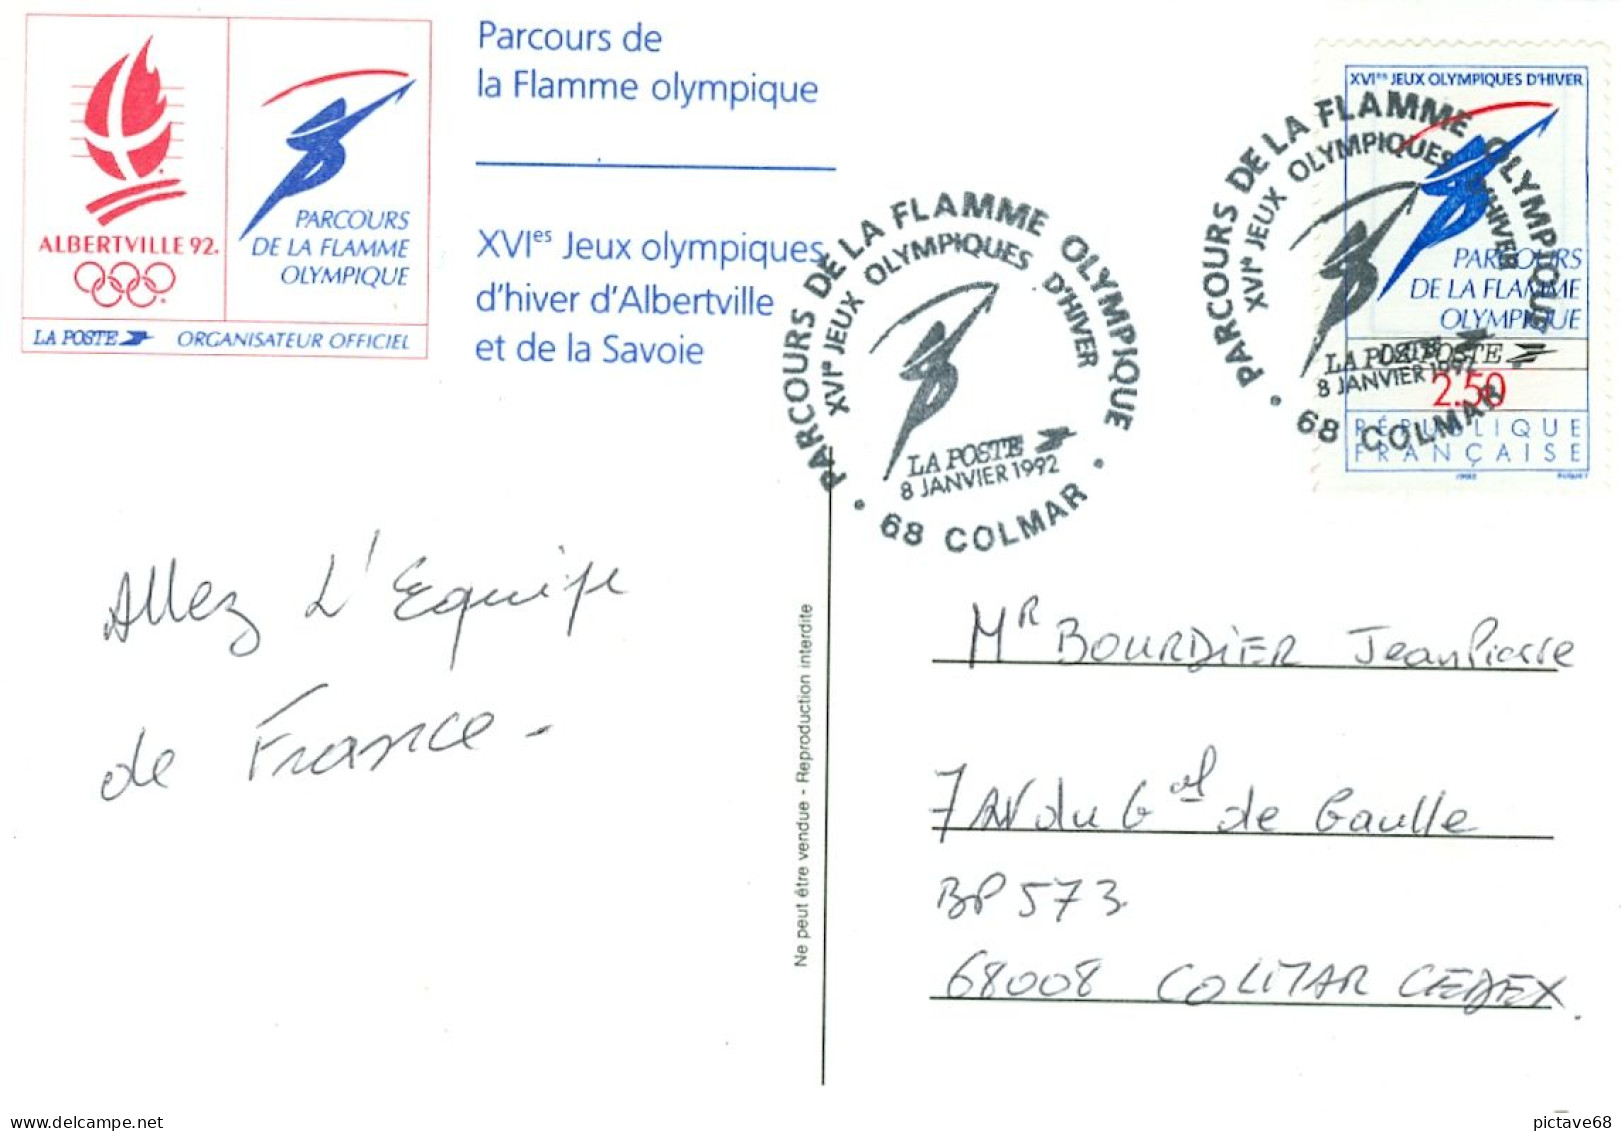 FRANCE / CARTE COMMEMORATIVE PARCOURS DE LA FLAMME OLYMPIQUE JO ALBERTVILLE 92 - Winter 1992: Albertville